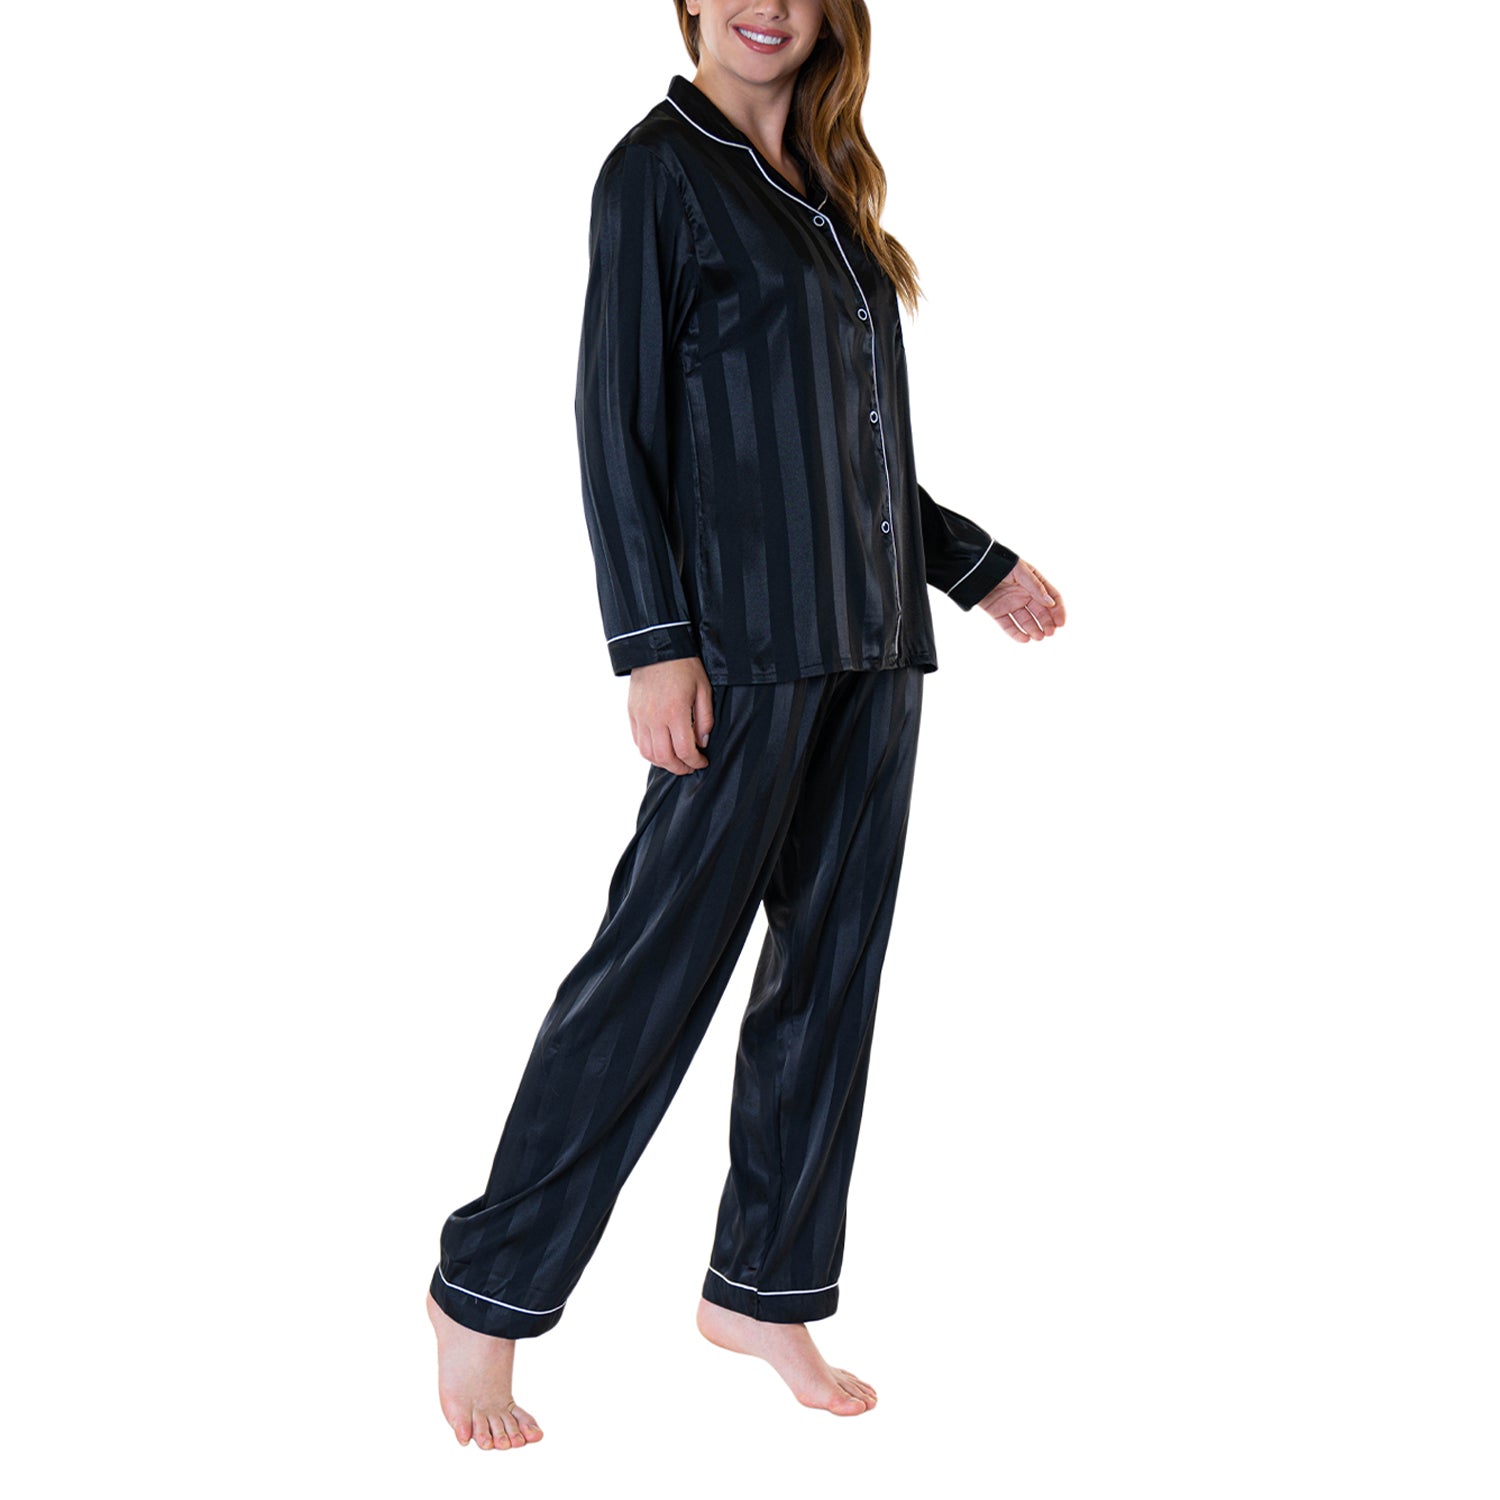 Pijama Satin Raya Mujer Baziani 8564